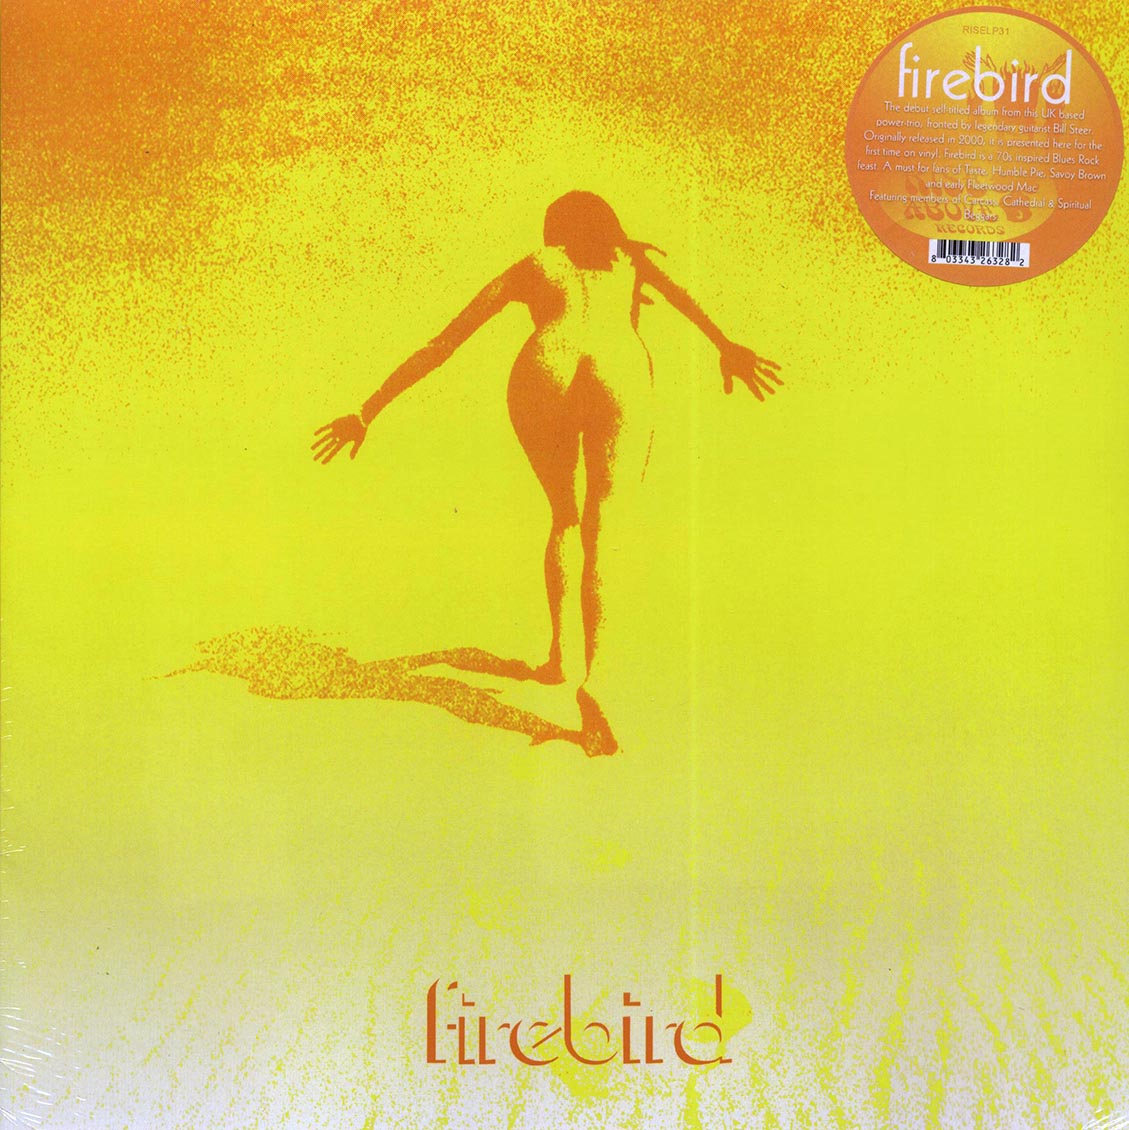 Firebird - Firebird (ltd. 250 copies made) (180g) - Vinyl LP